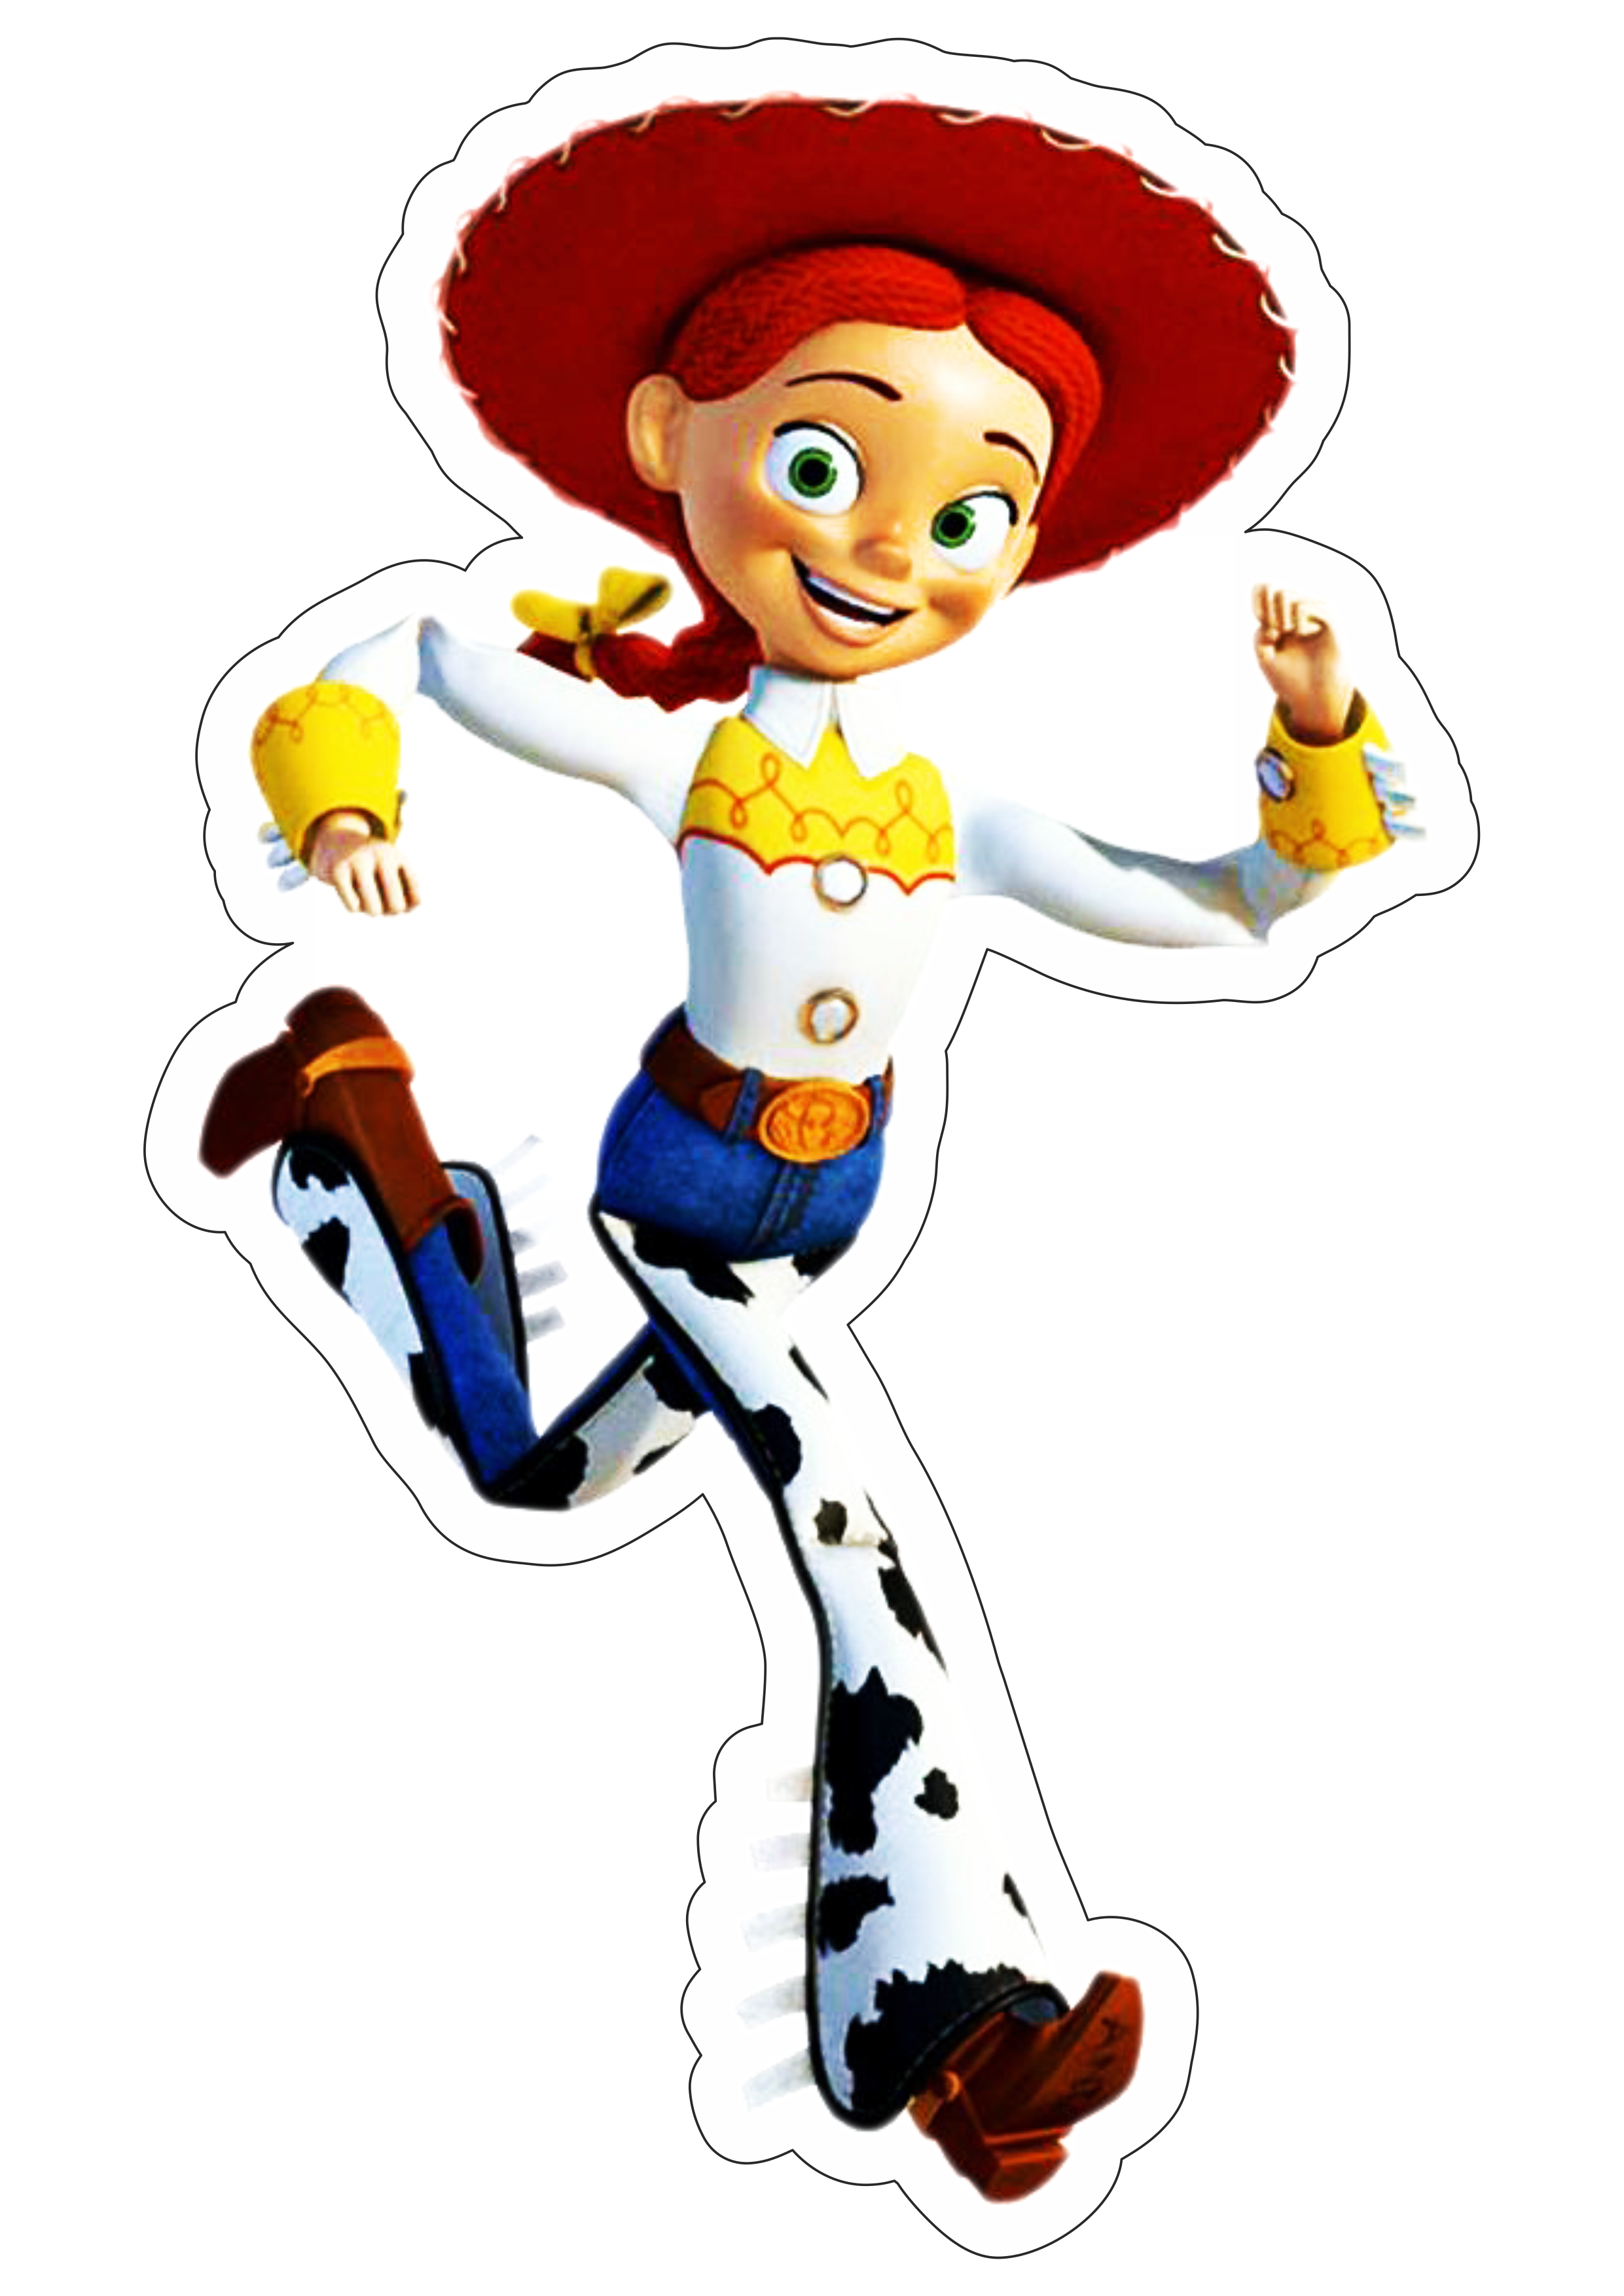 Toy Story Jessie brinquedo menina cowboy disney plus streaming animação infantil fundo transparente com contorno png